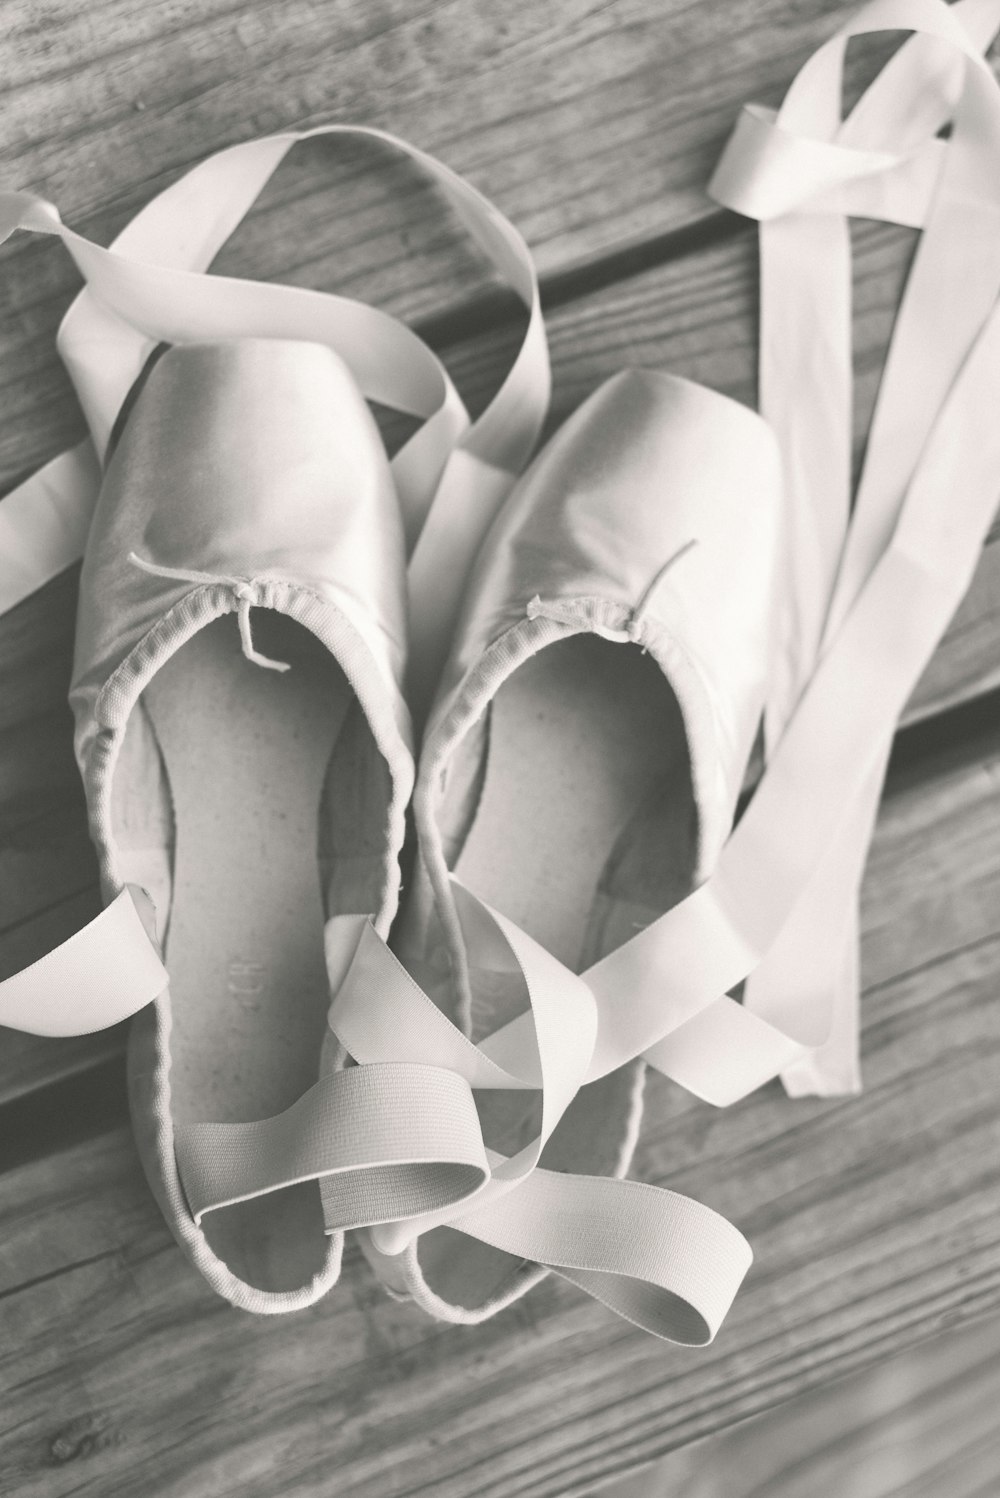 une paire de chaussures de ballet posée sur un plancher en bois